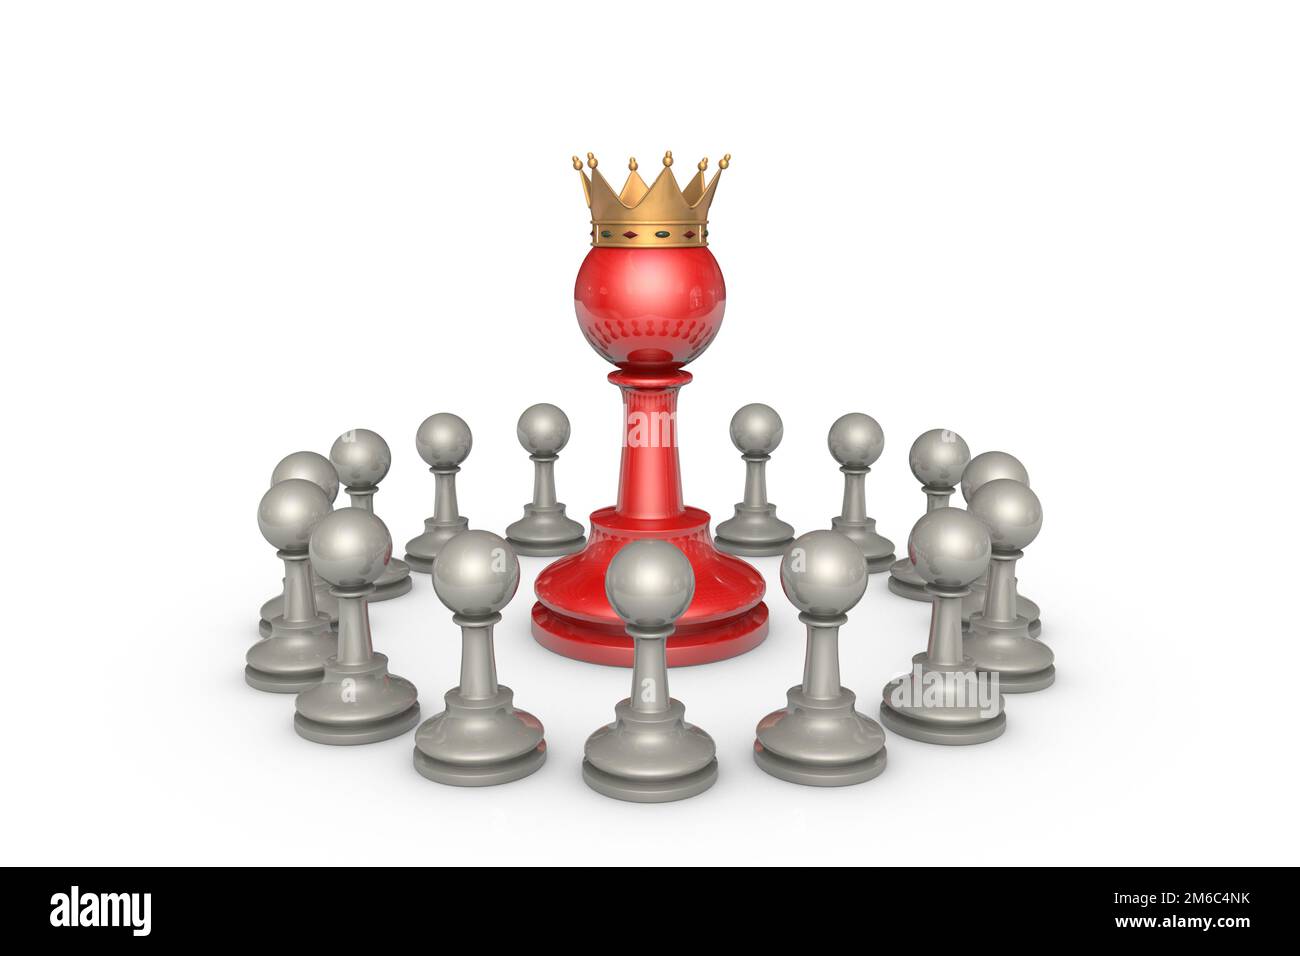 Élections parlementaires ou élite politique (métaphore des échecs) Banque D'Images